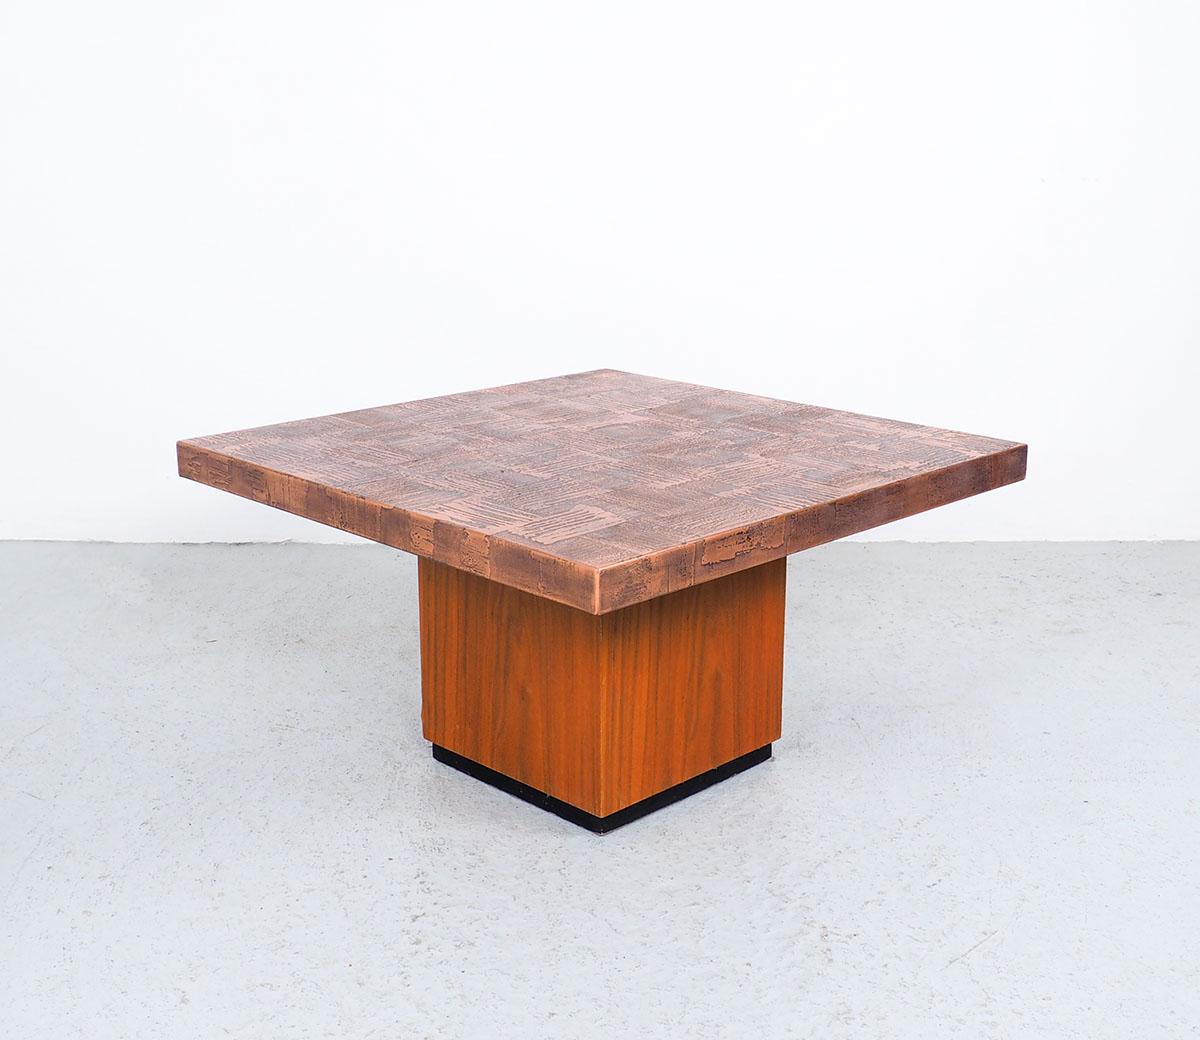 Table basse carrée artistique et brutaliste vintage conçue par l'artiste allemand Heinz Lilienthal (1927-2006).
Conçue dans les années 1970.
La table a un plateau en cuivre gravé et une base en bois de teck.
La table a un aspect chaleureux et